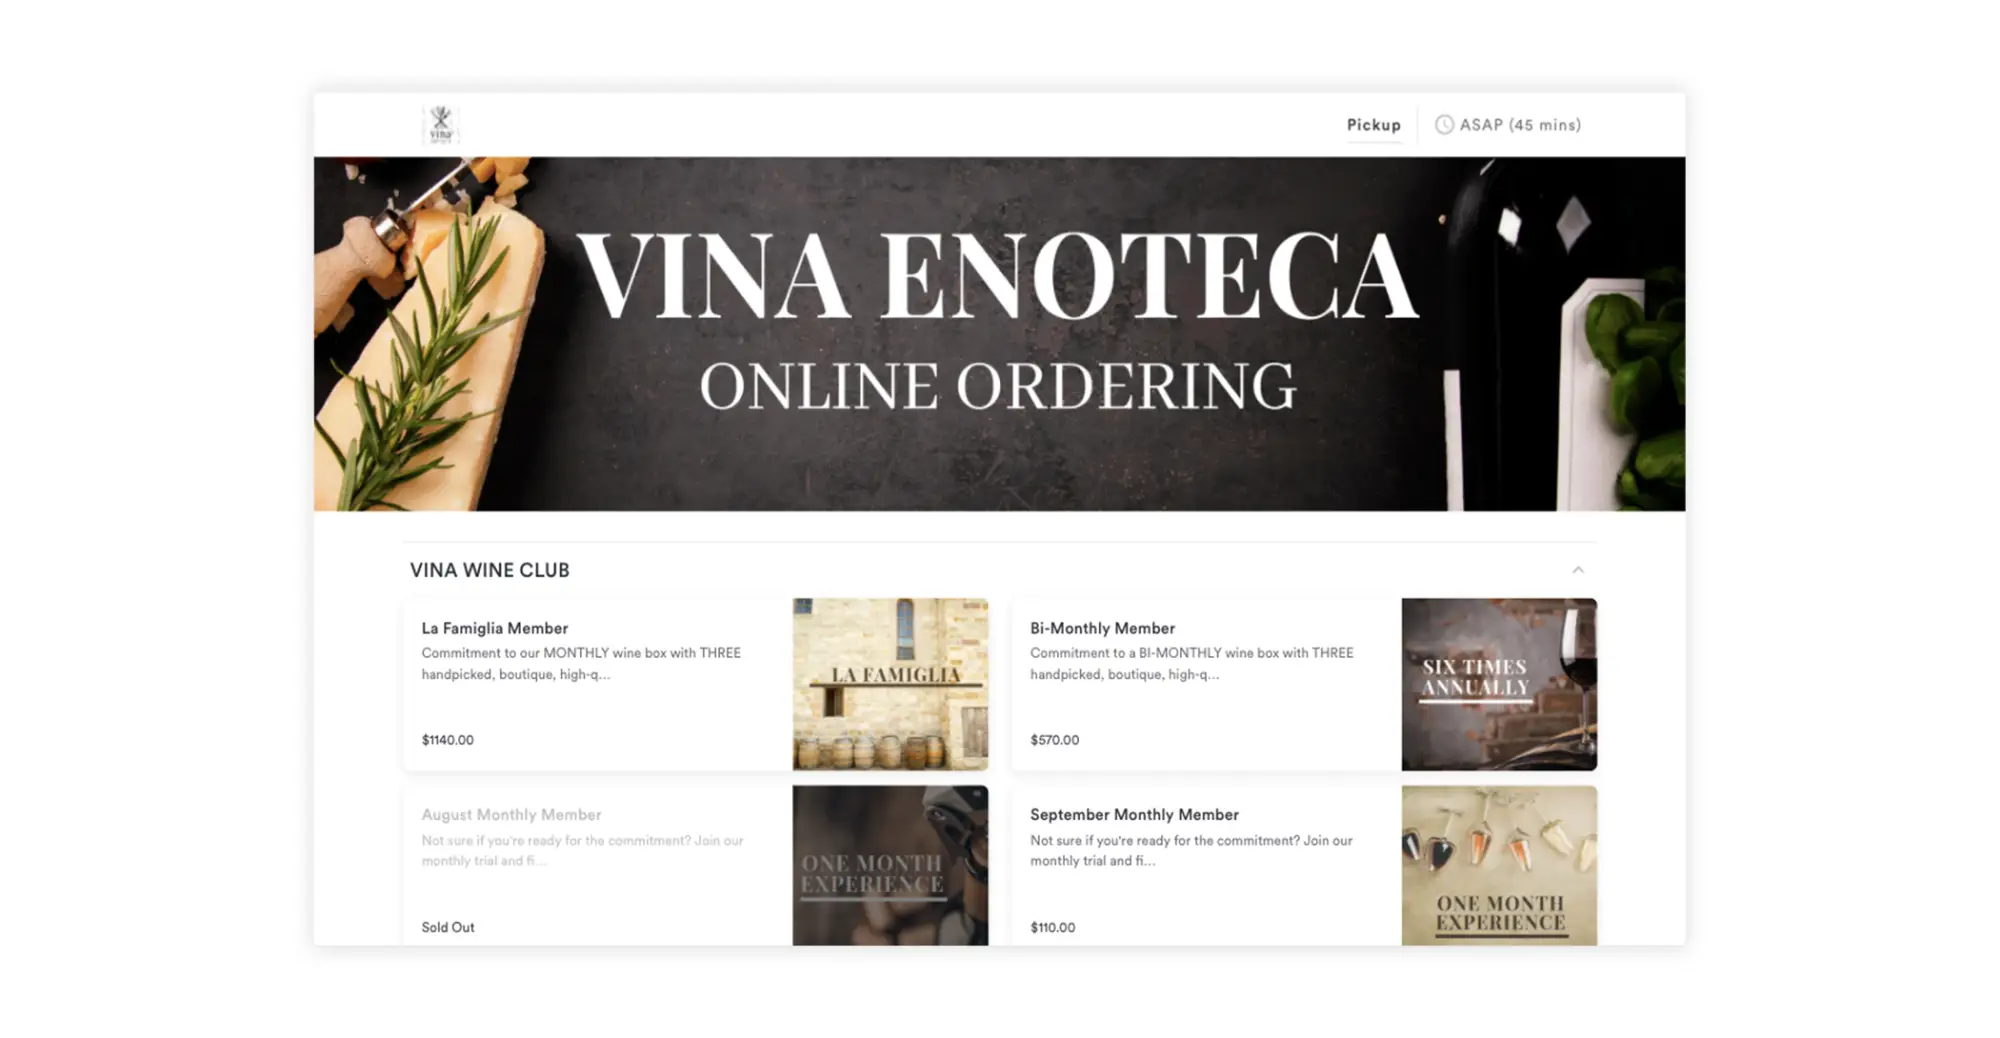 Vina Enoteca offers monthly membership packages via online ordering